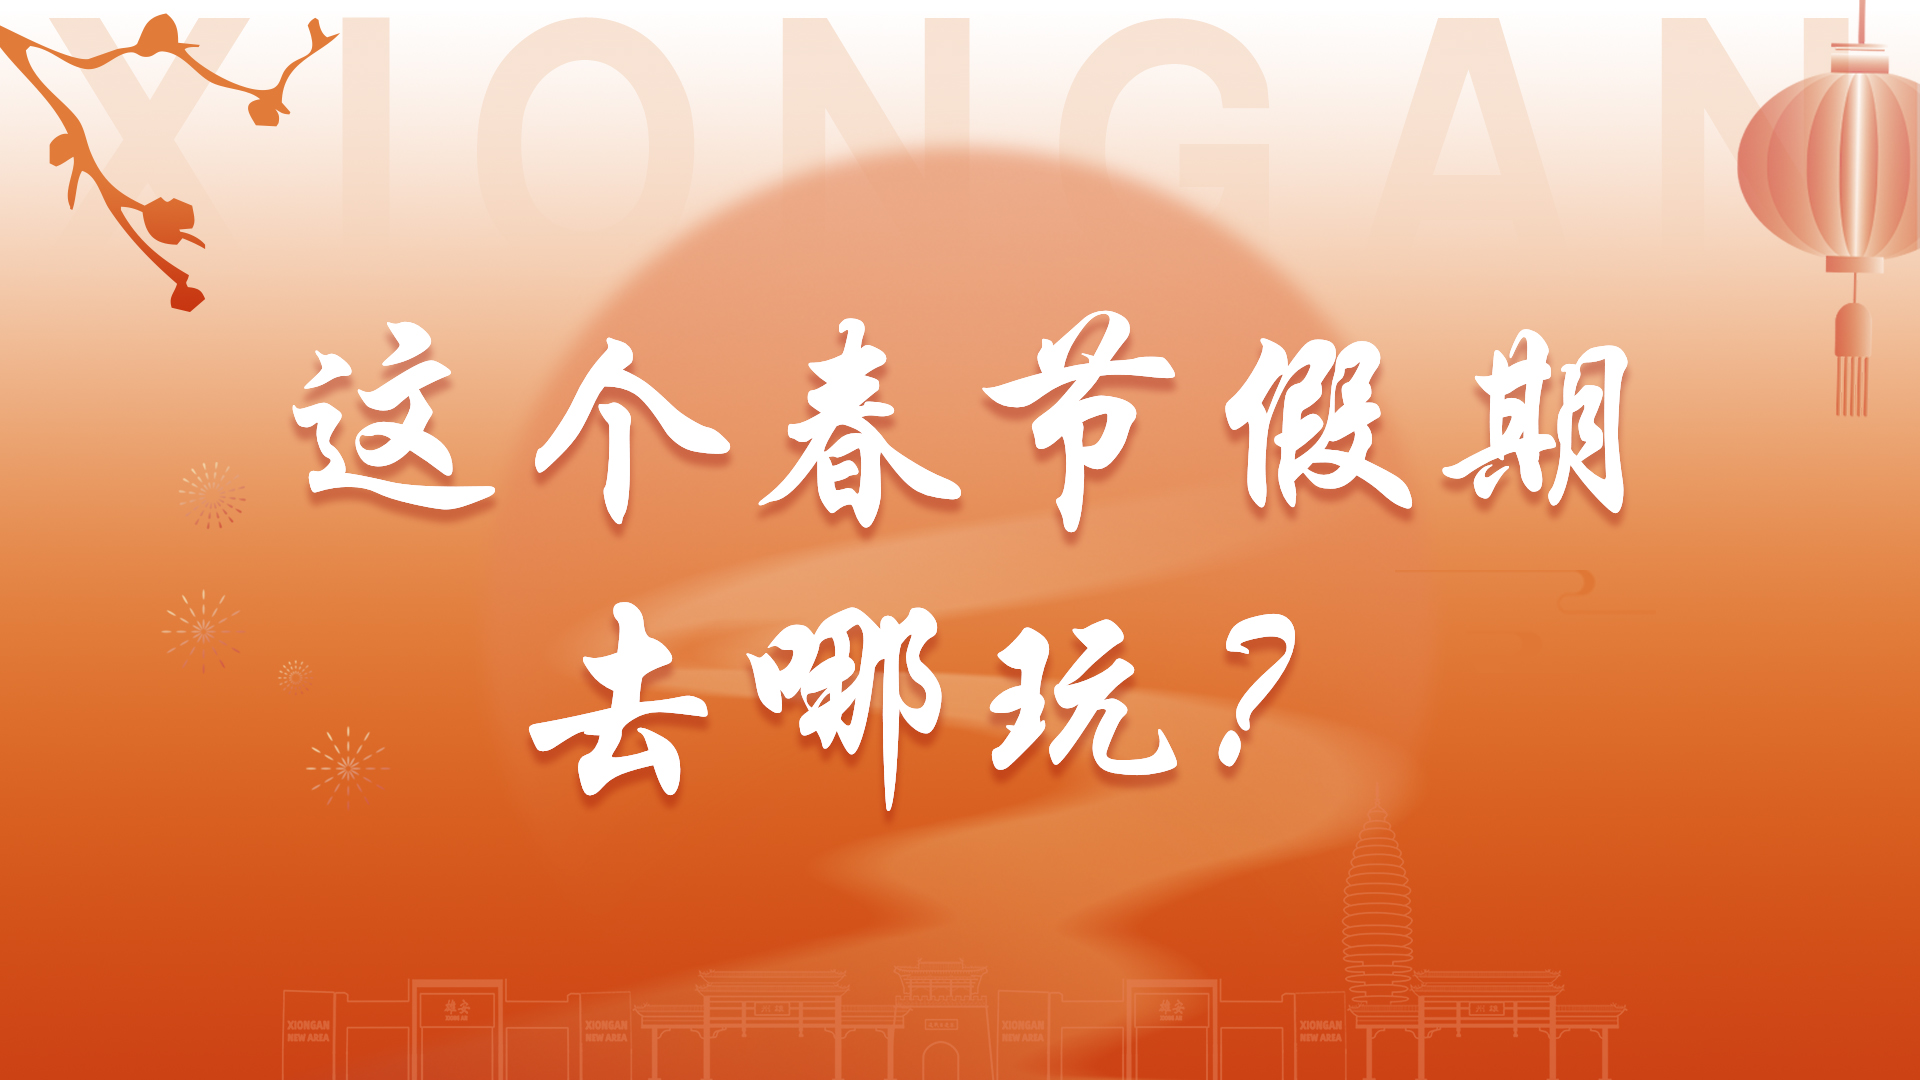 【网络中国节·春节】H5丨在雄安，这个春节假期去哪玩？